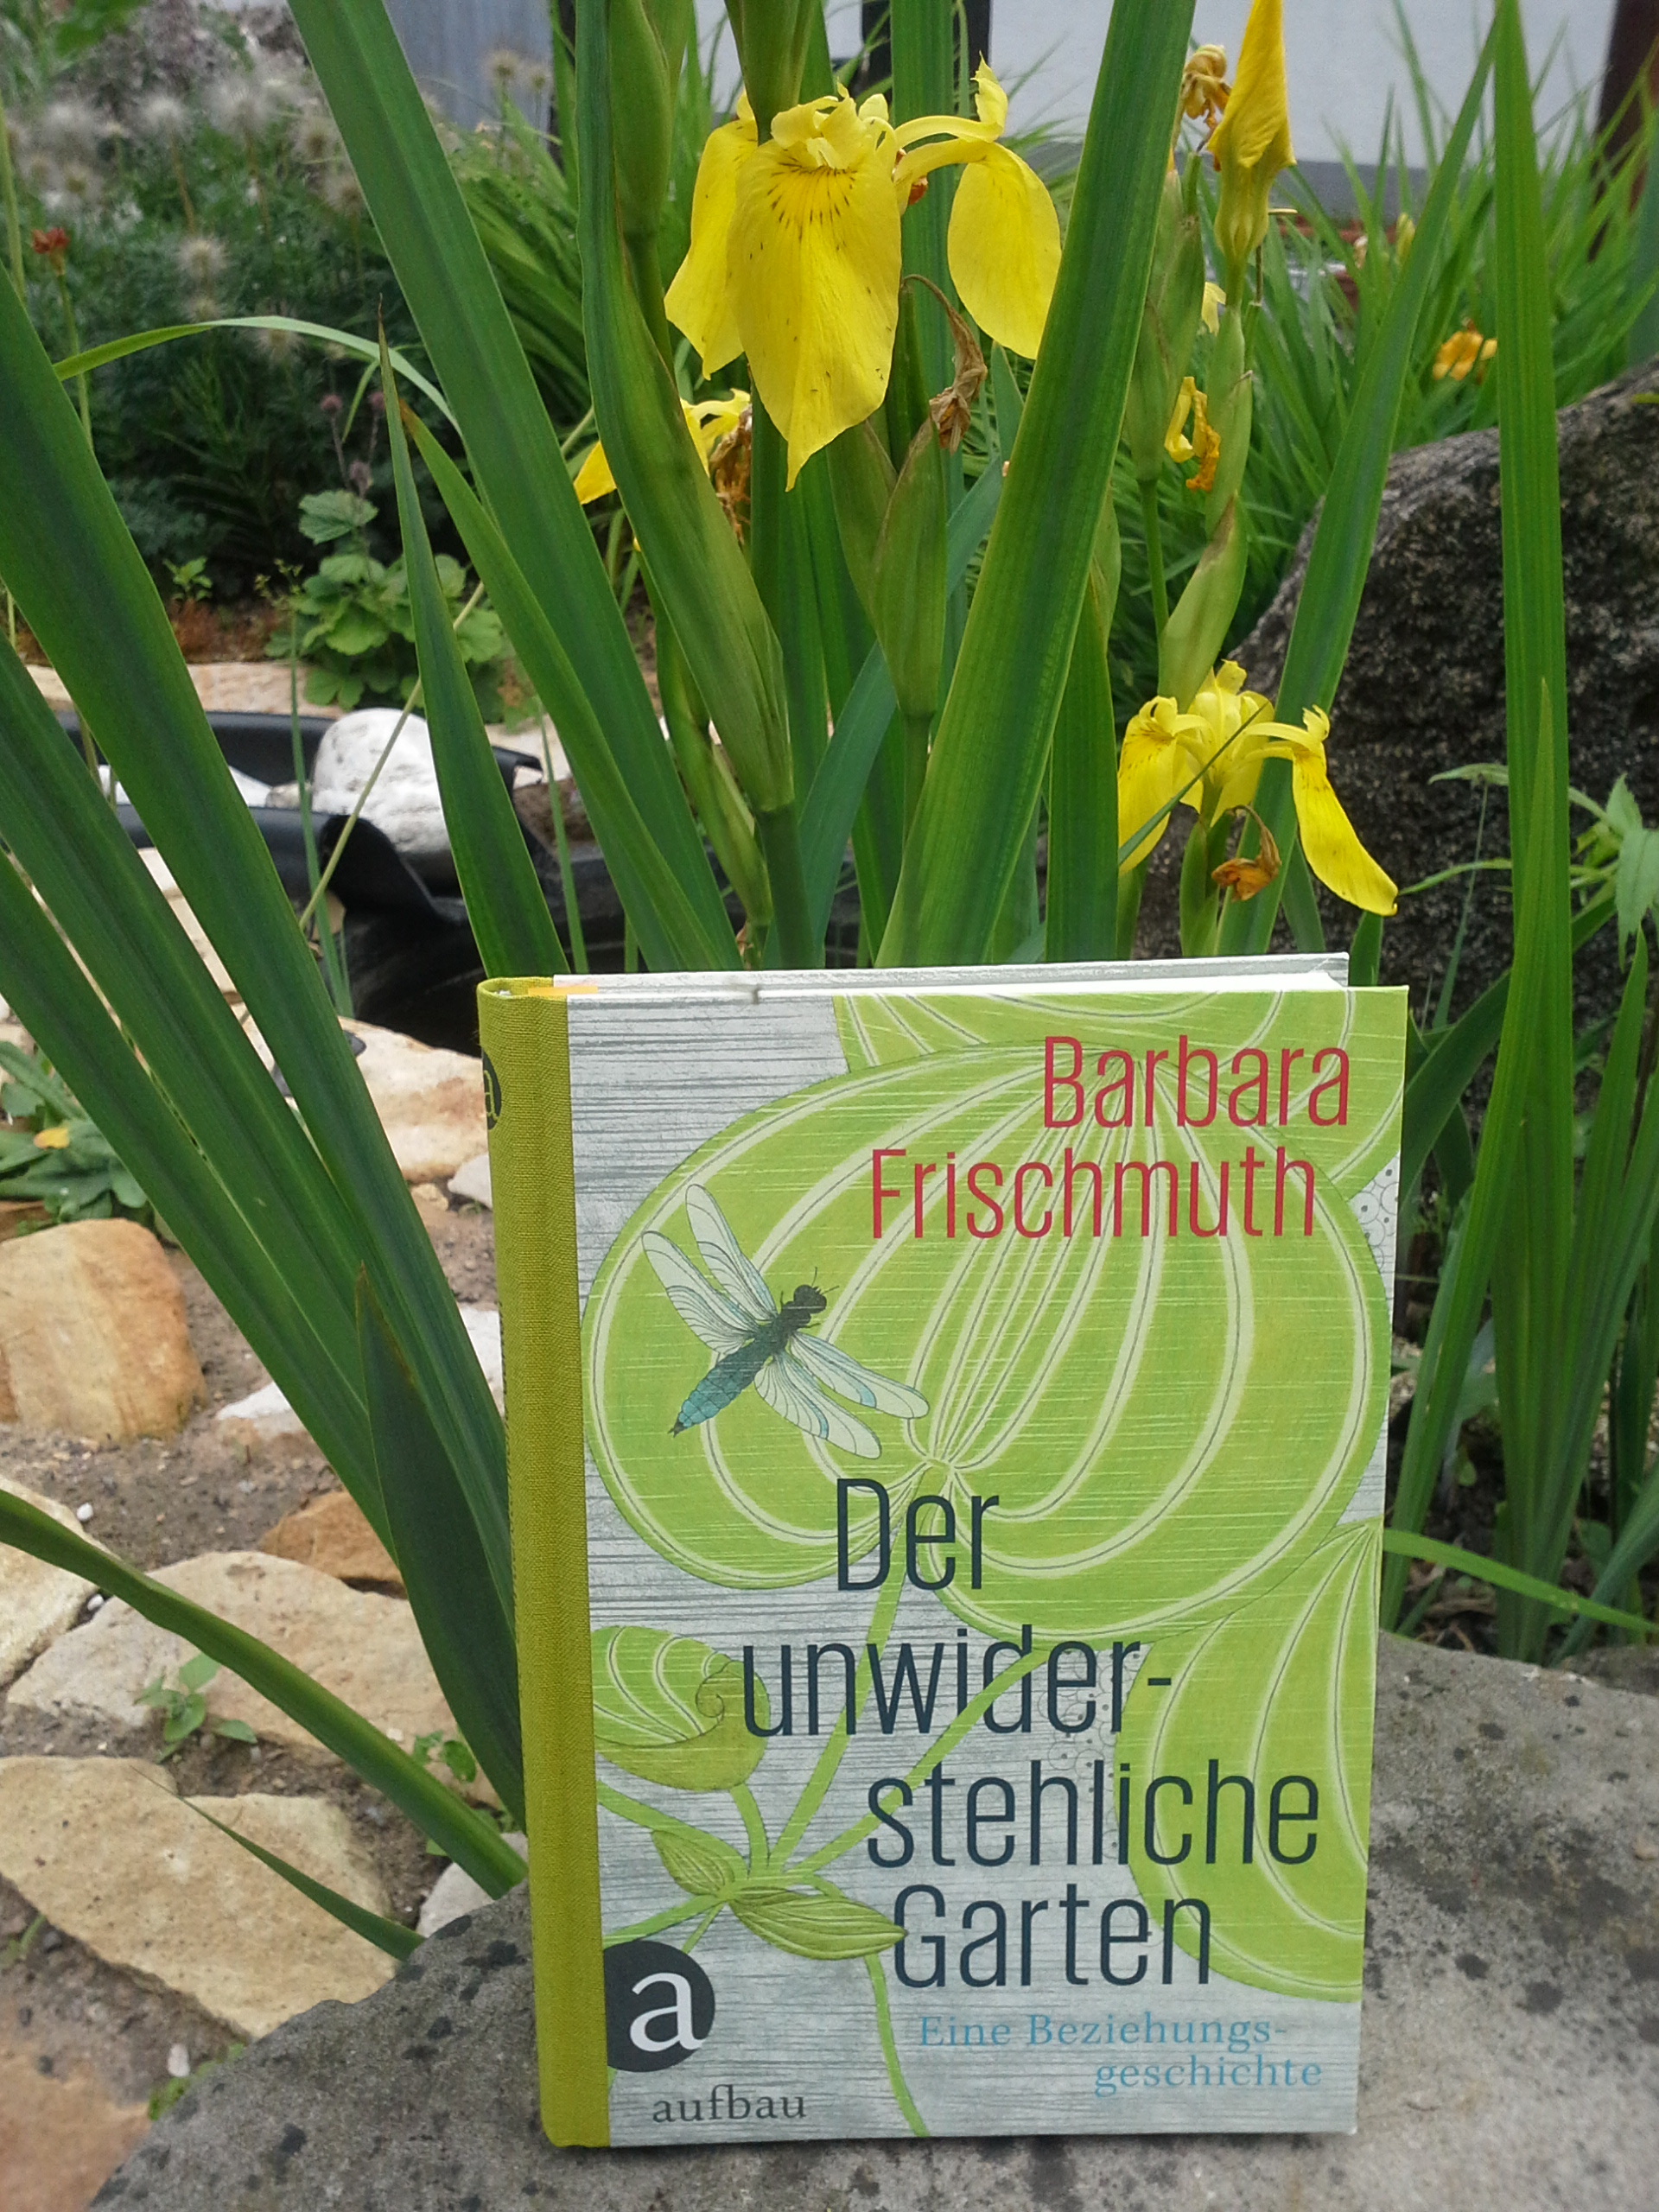 Barbara Frischmuth: Der unwiderstehliche Garten